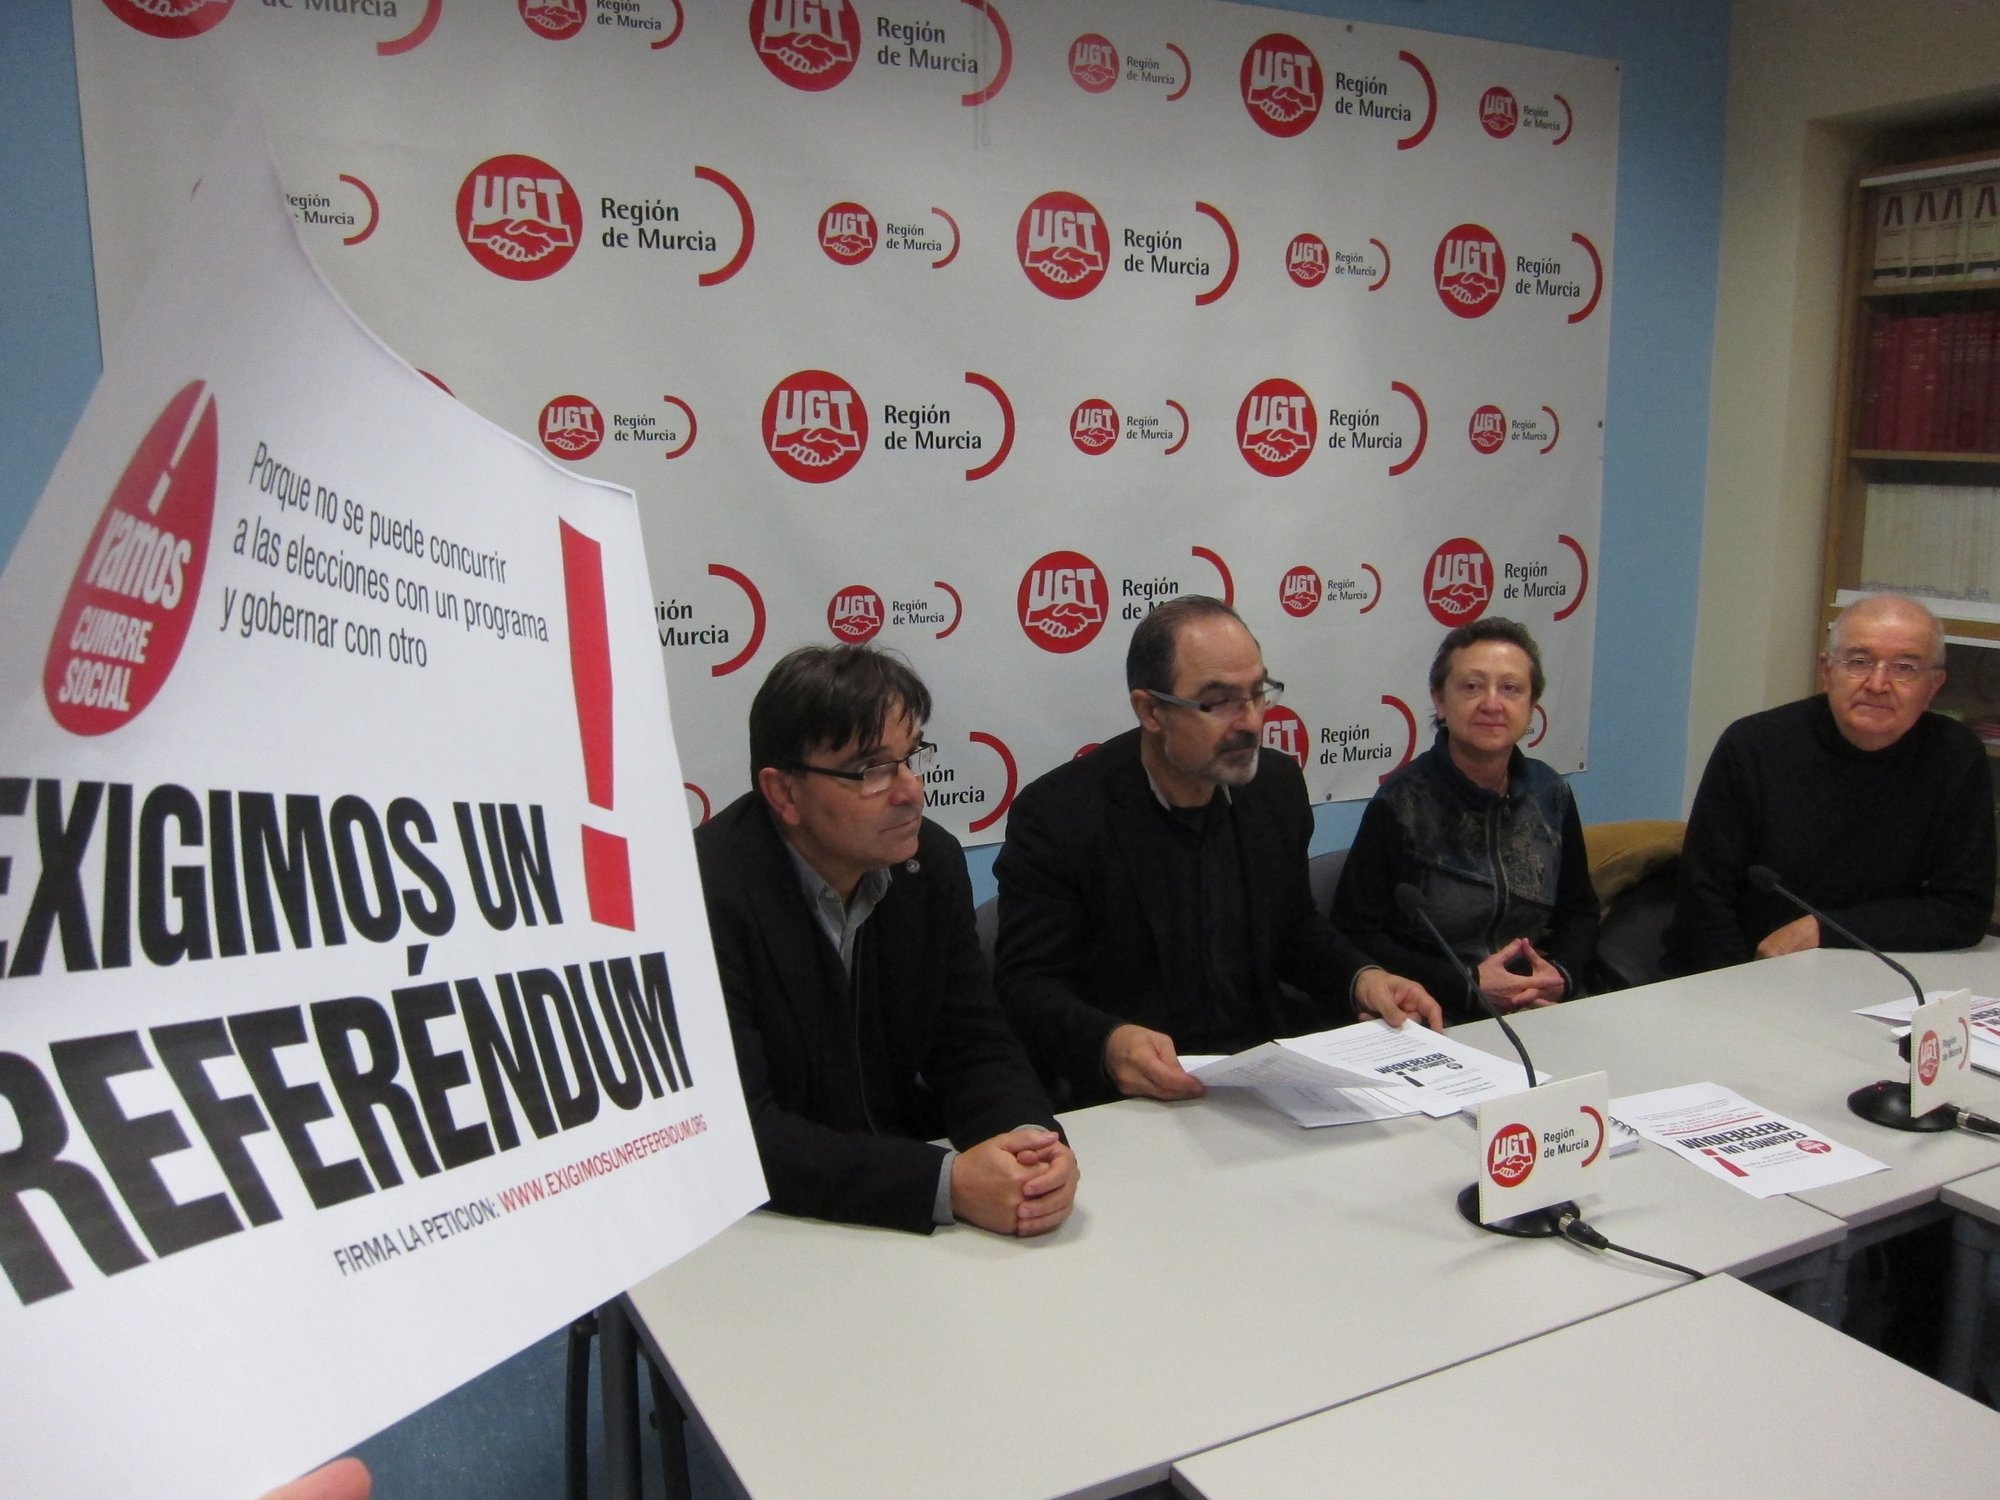 La Cumbre Social inicia una campaña en la Región para exigir un referéndum sobre las reformas del Gobierno